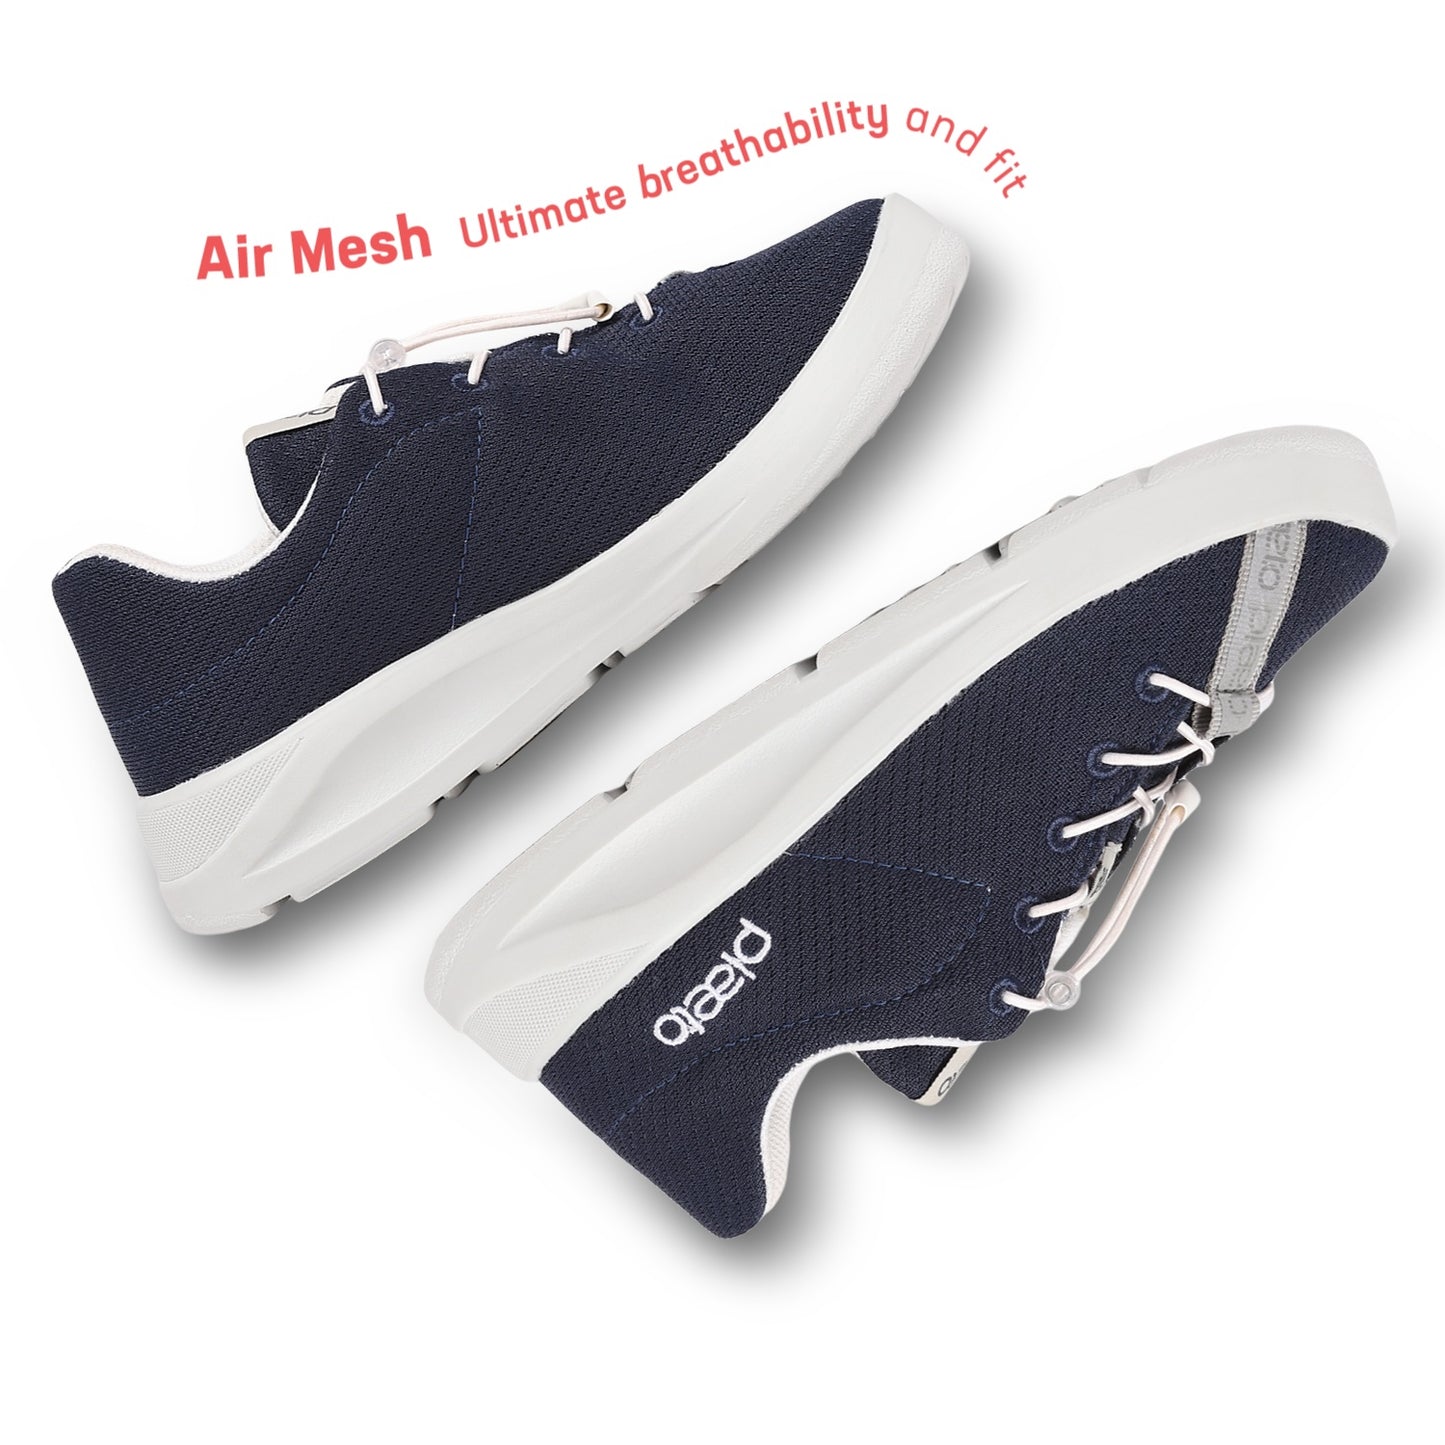 Ace Kids Multiplay Sneakers - Navy Blue / Grey